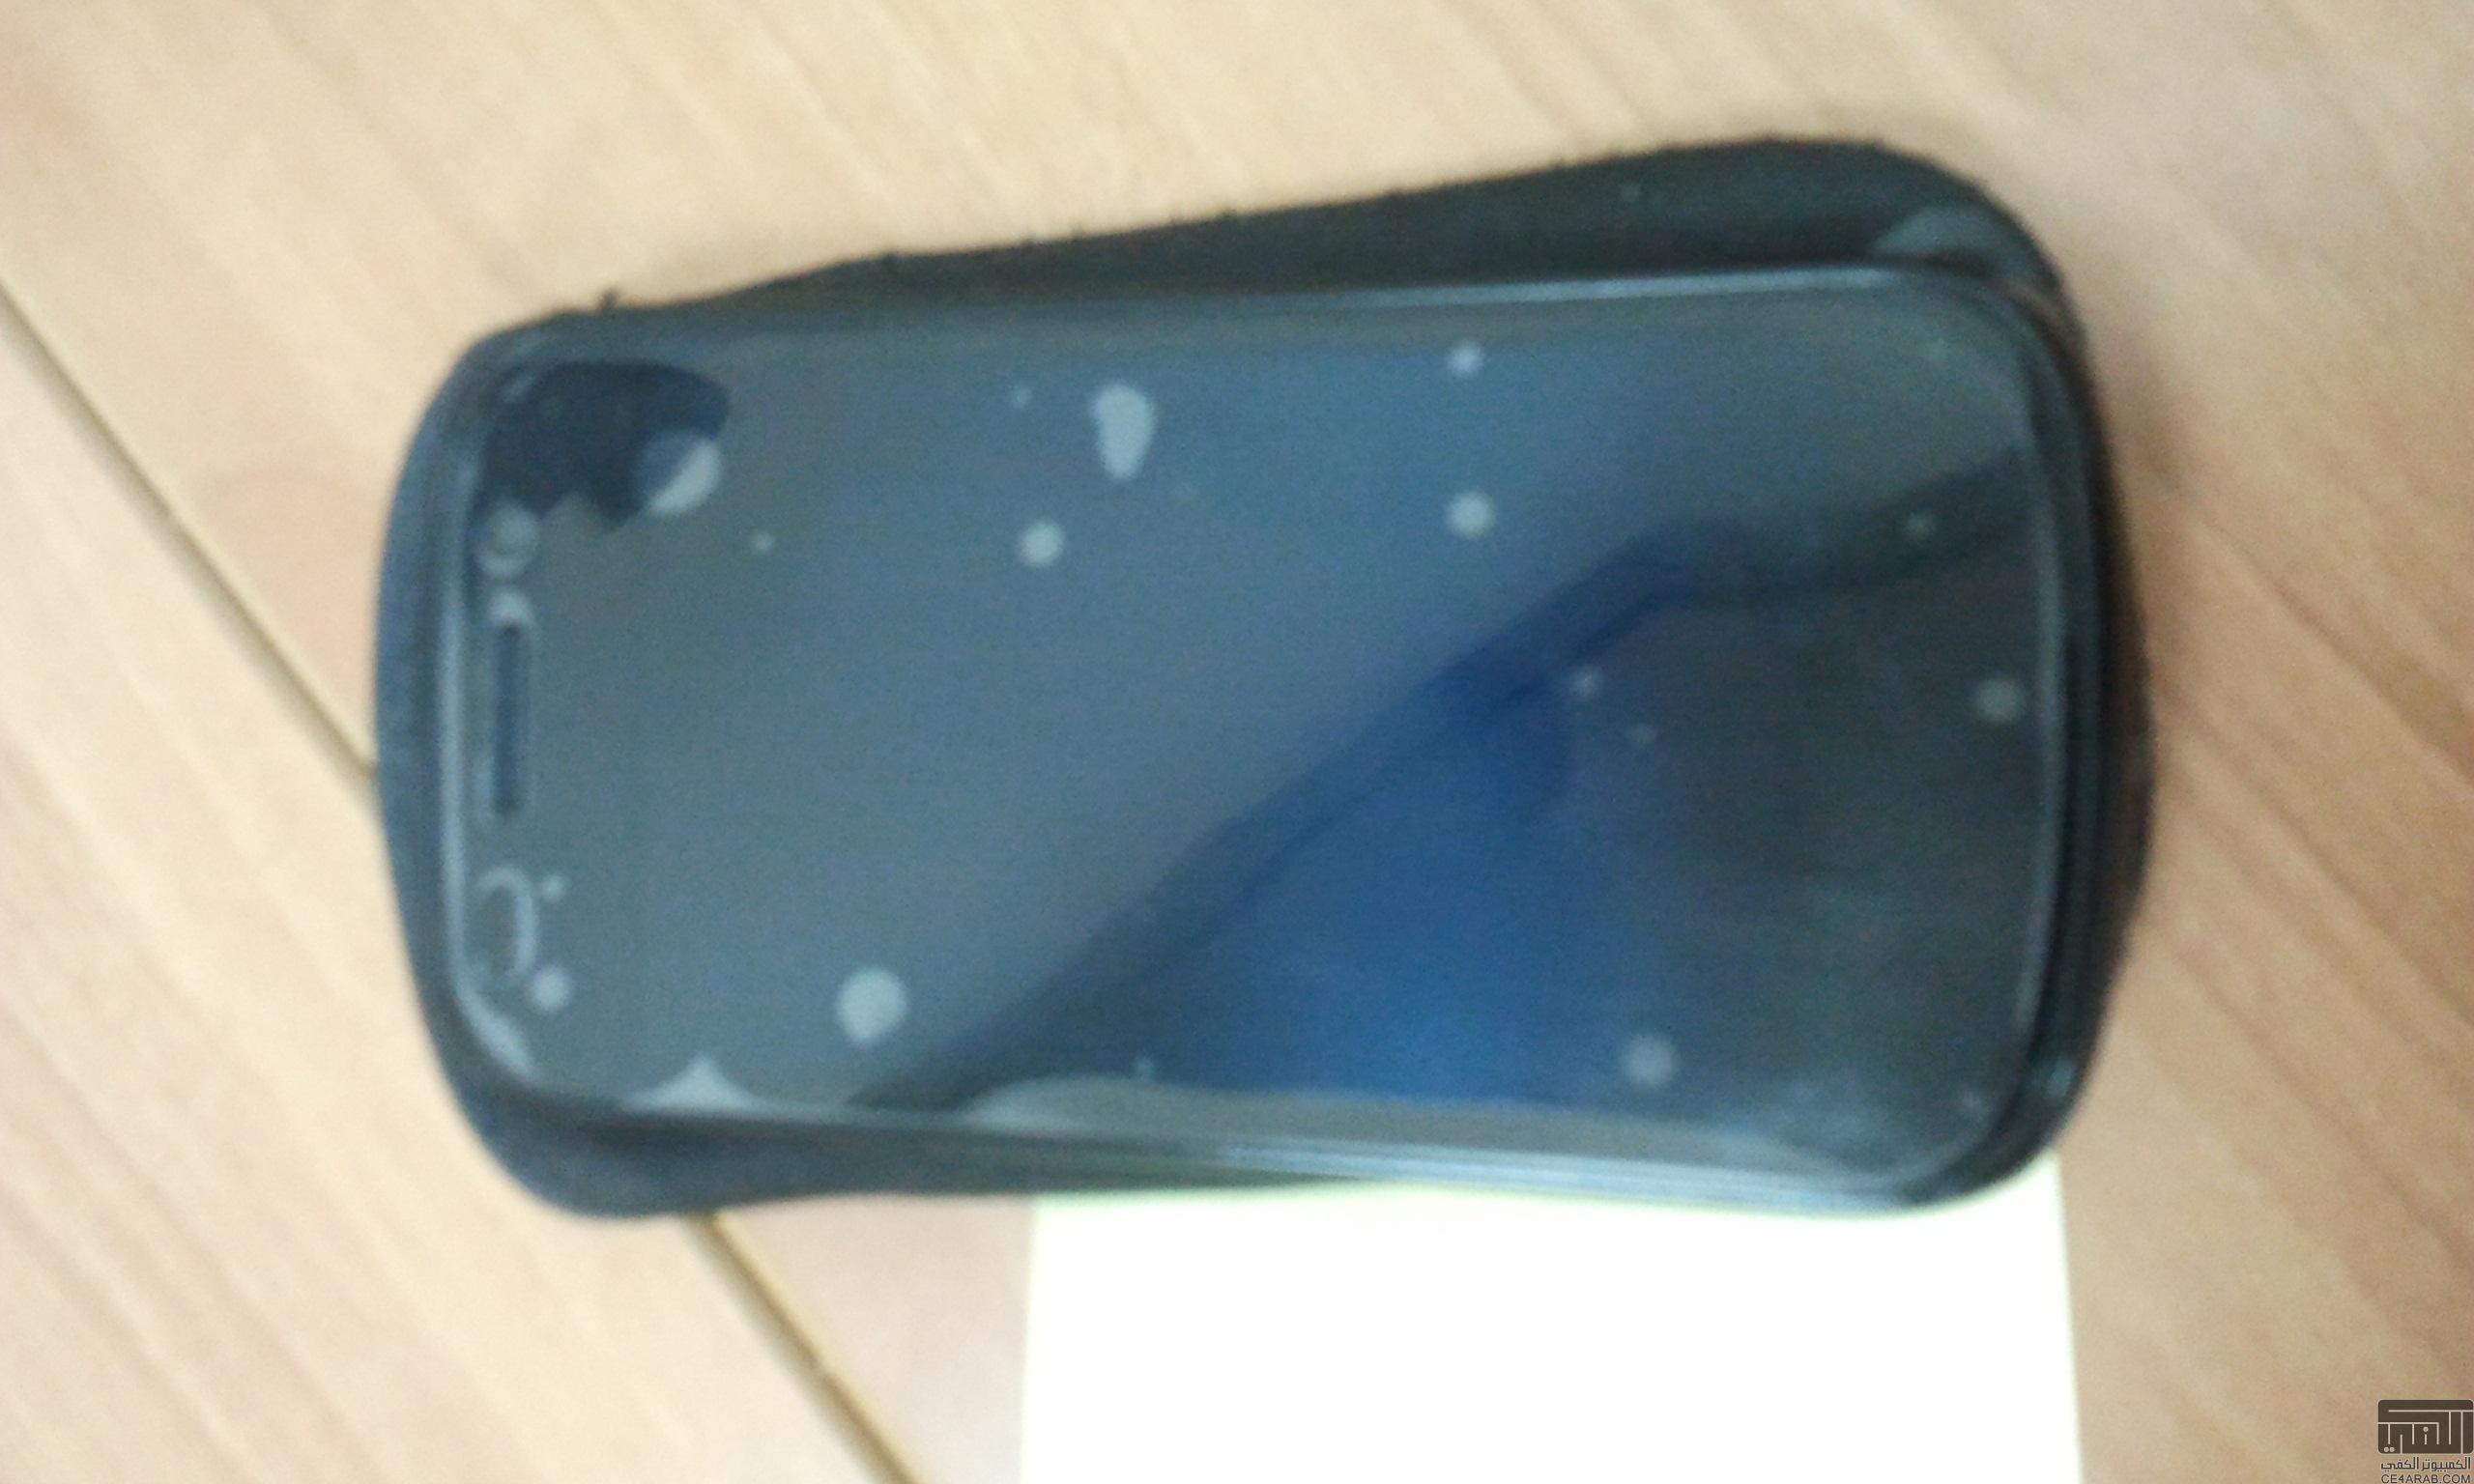 Google Nexus S I9020 مستعمل للبيع بالرياض